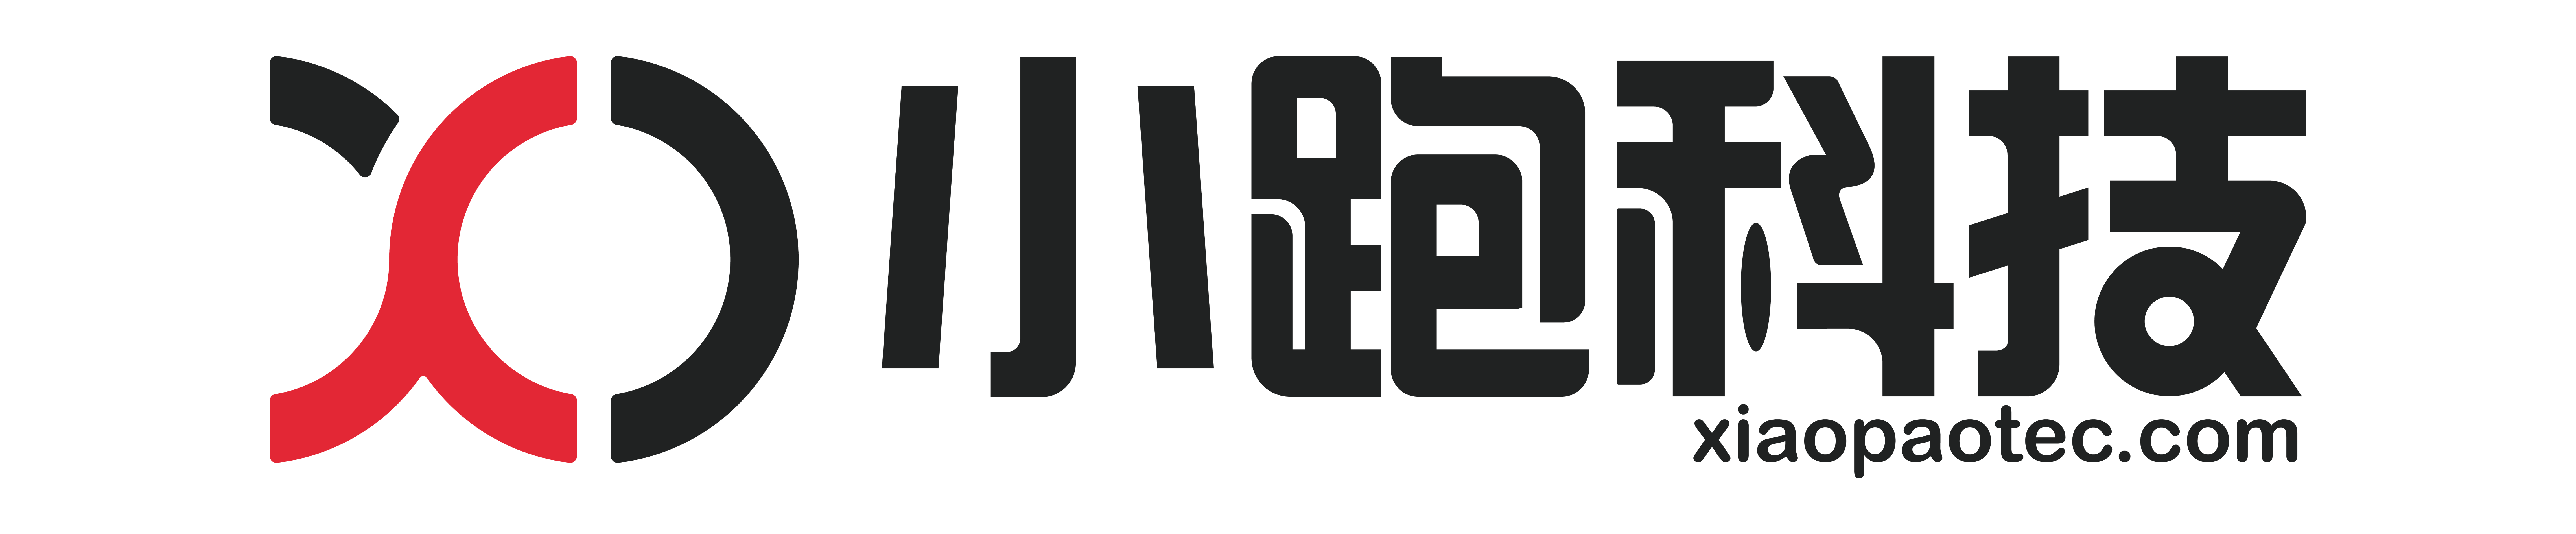 广州小跑软件科技有限公司logo